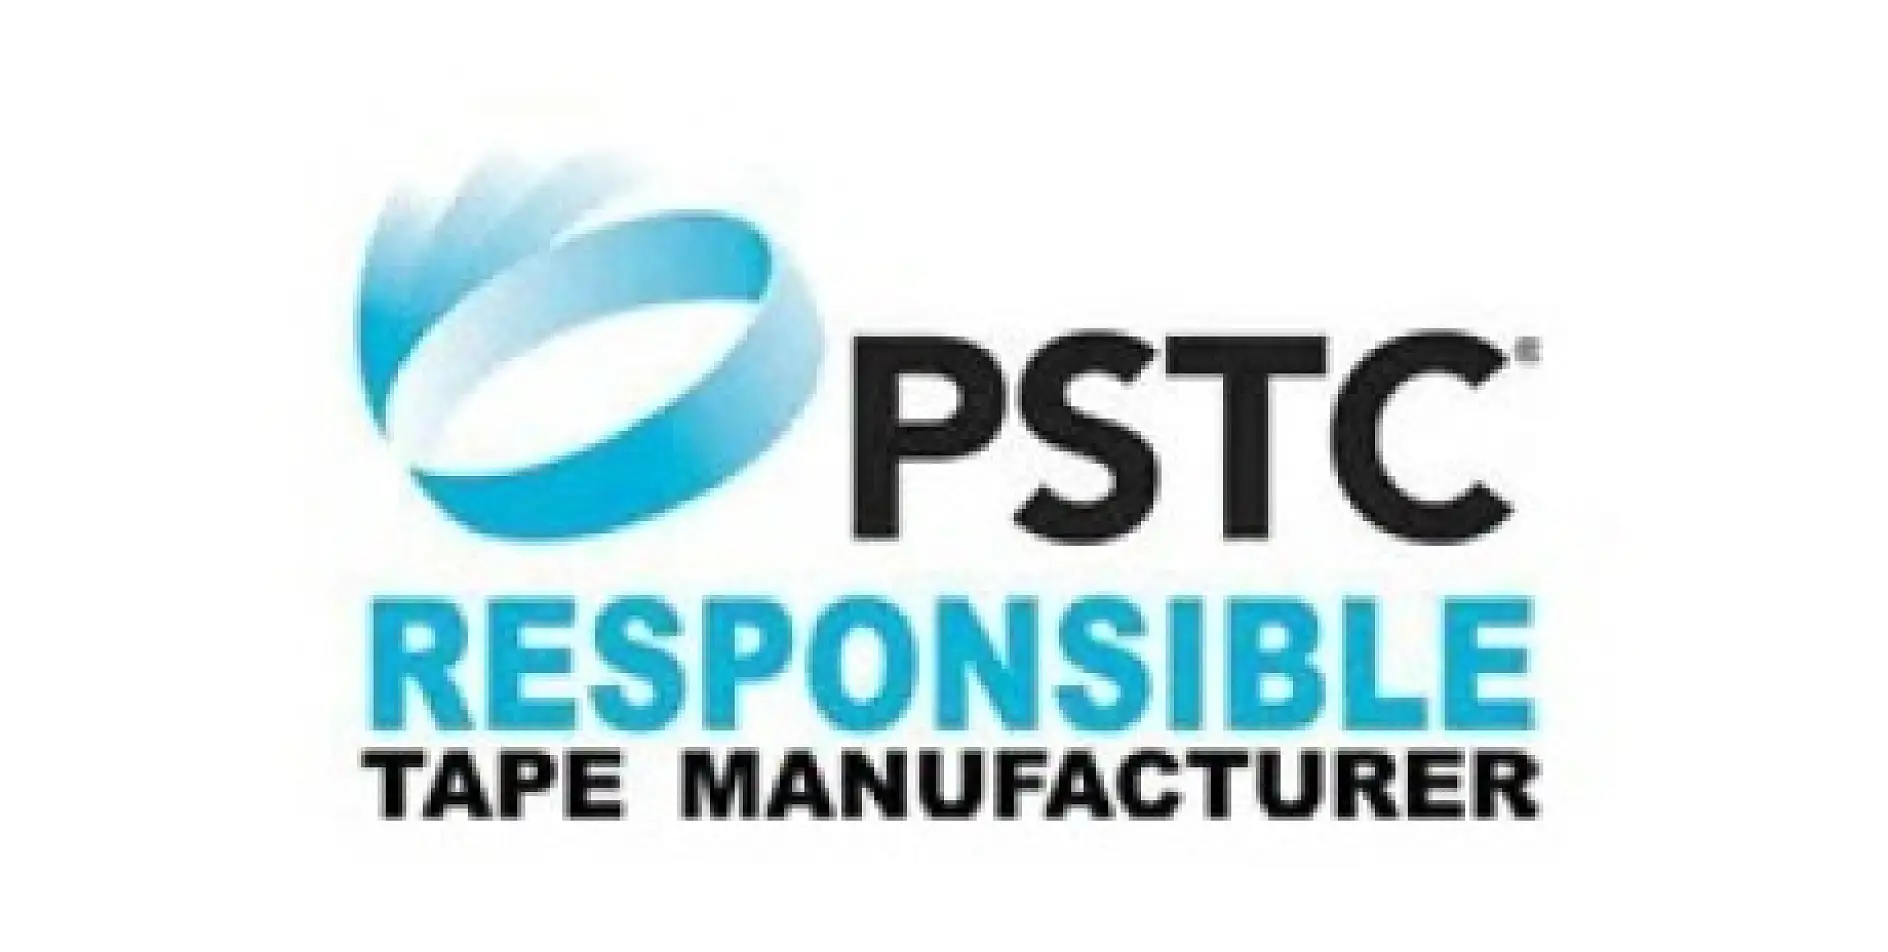 米国粘着テープ工業会（PSTC）は、60年の歴史を持つ非営利団体で、テープ製造業者と関連のサプライヤーを代表する北米商取引協会です。加盟業者が世界市場で圧力に敏感な高品質粘着テープの製造を行えるようサポートすることが、主な活動目的です。